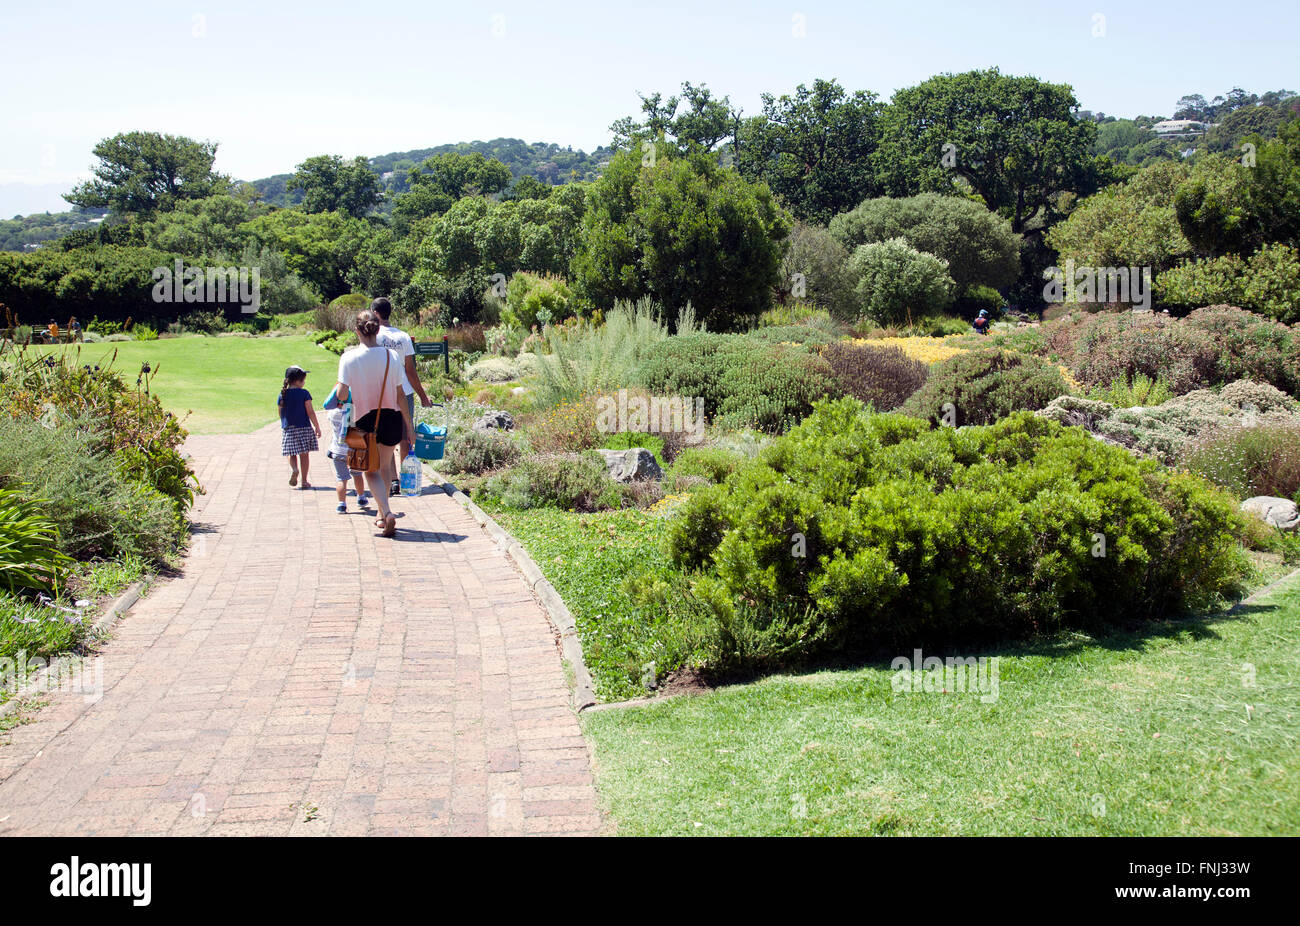 Kirstenbosch National Botanical Garden à Cape Town - Afrique du Sud Banque D'Images